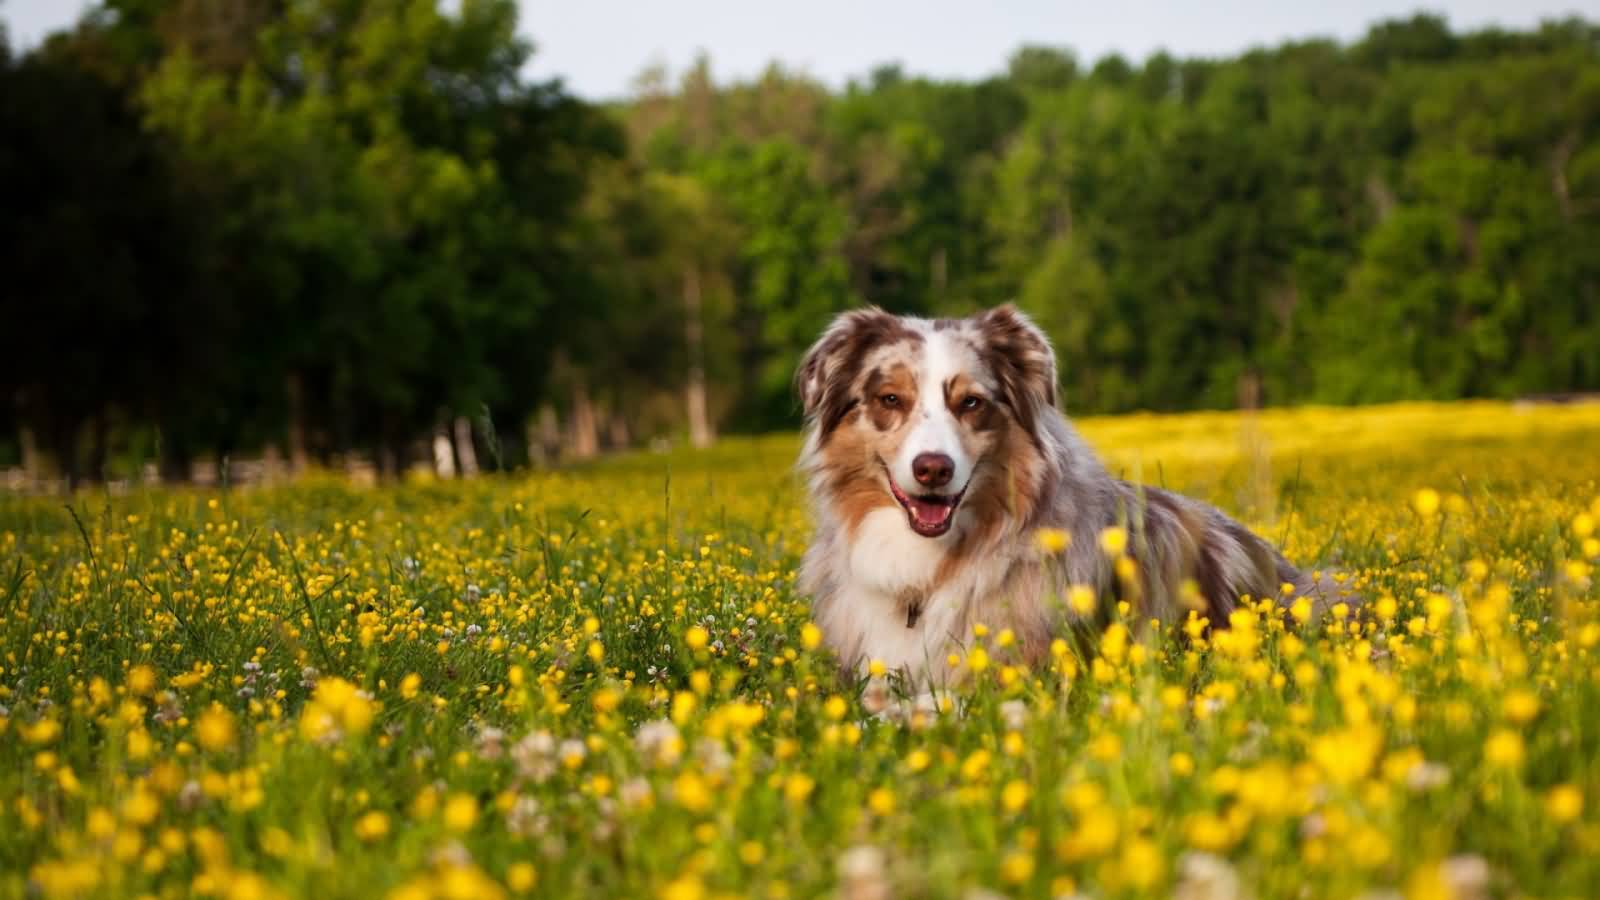 Australian Shepherd Dog In Flowers Field Picture